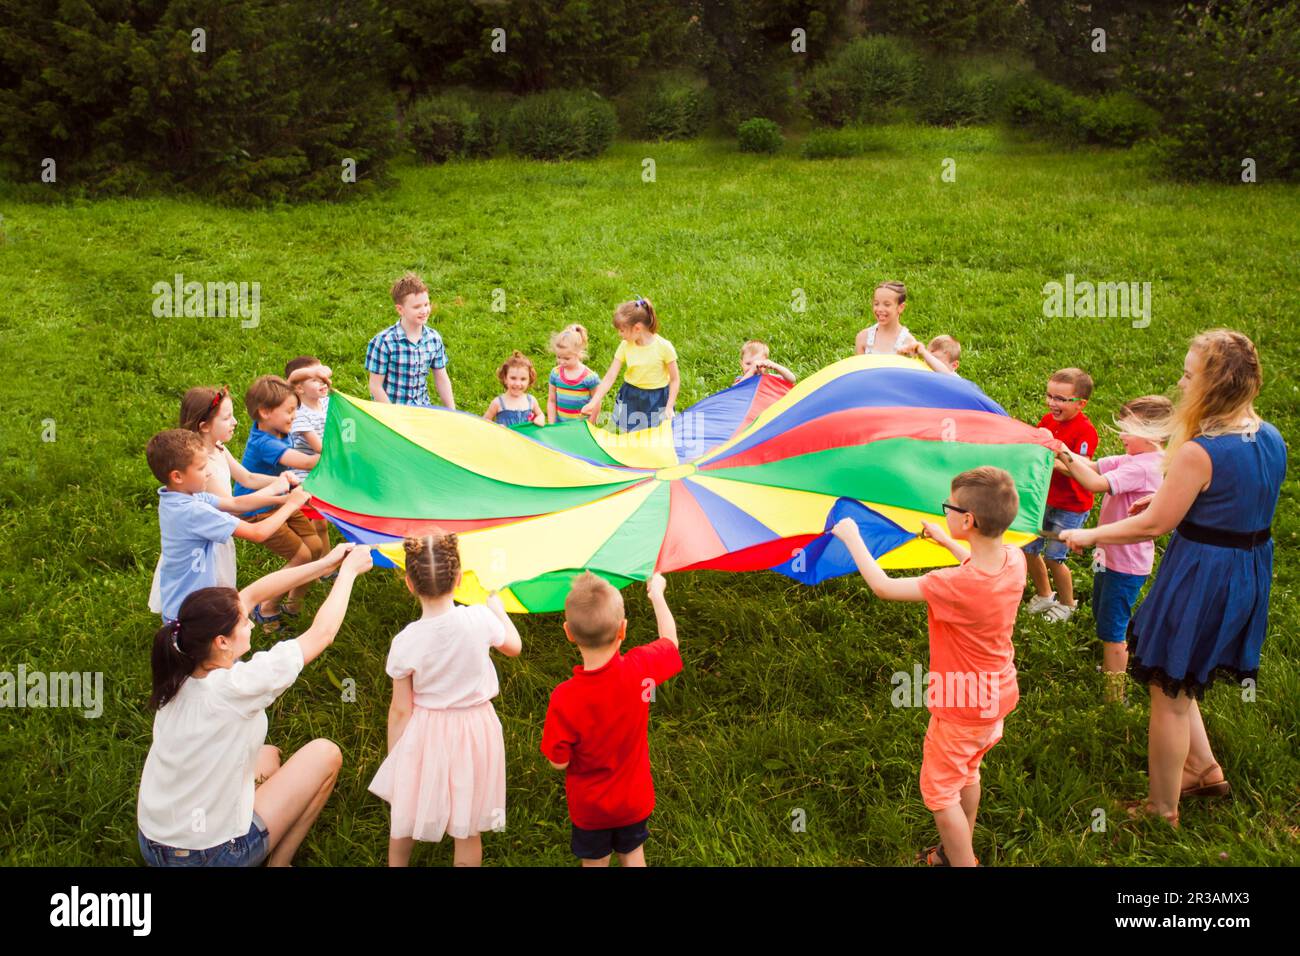 Jeux en plein air avec parachute coloré. Camp d'été Banque D'Images